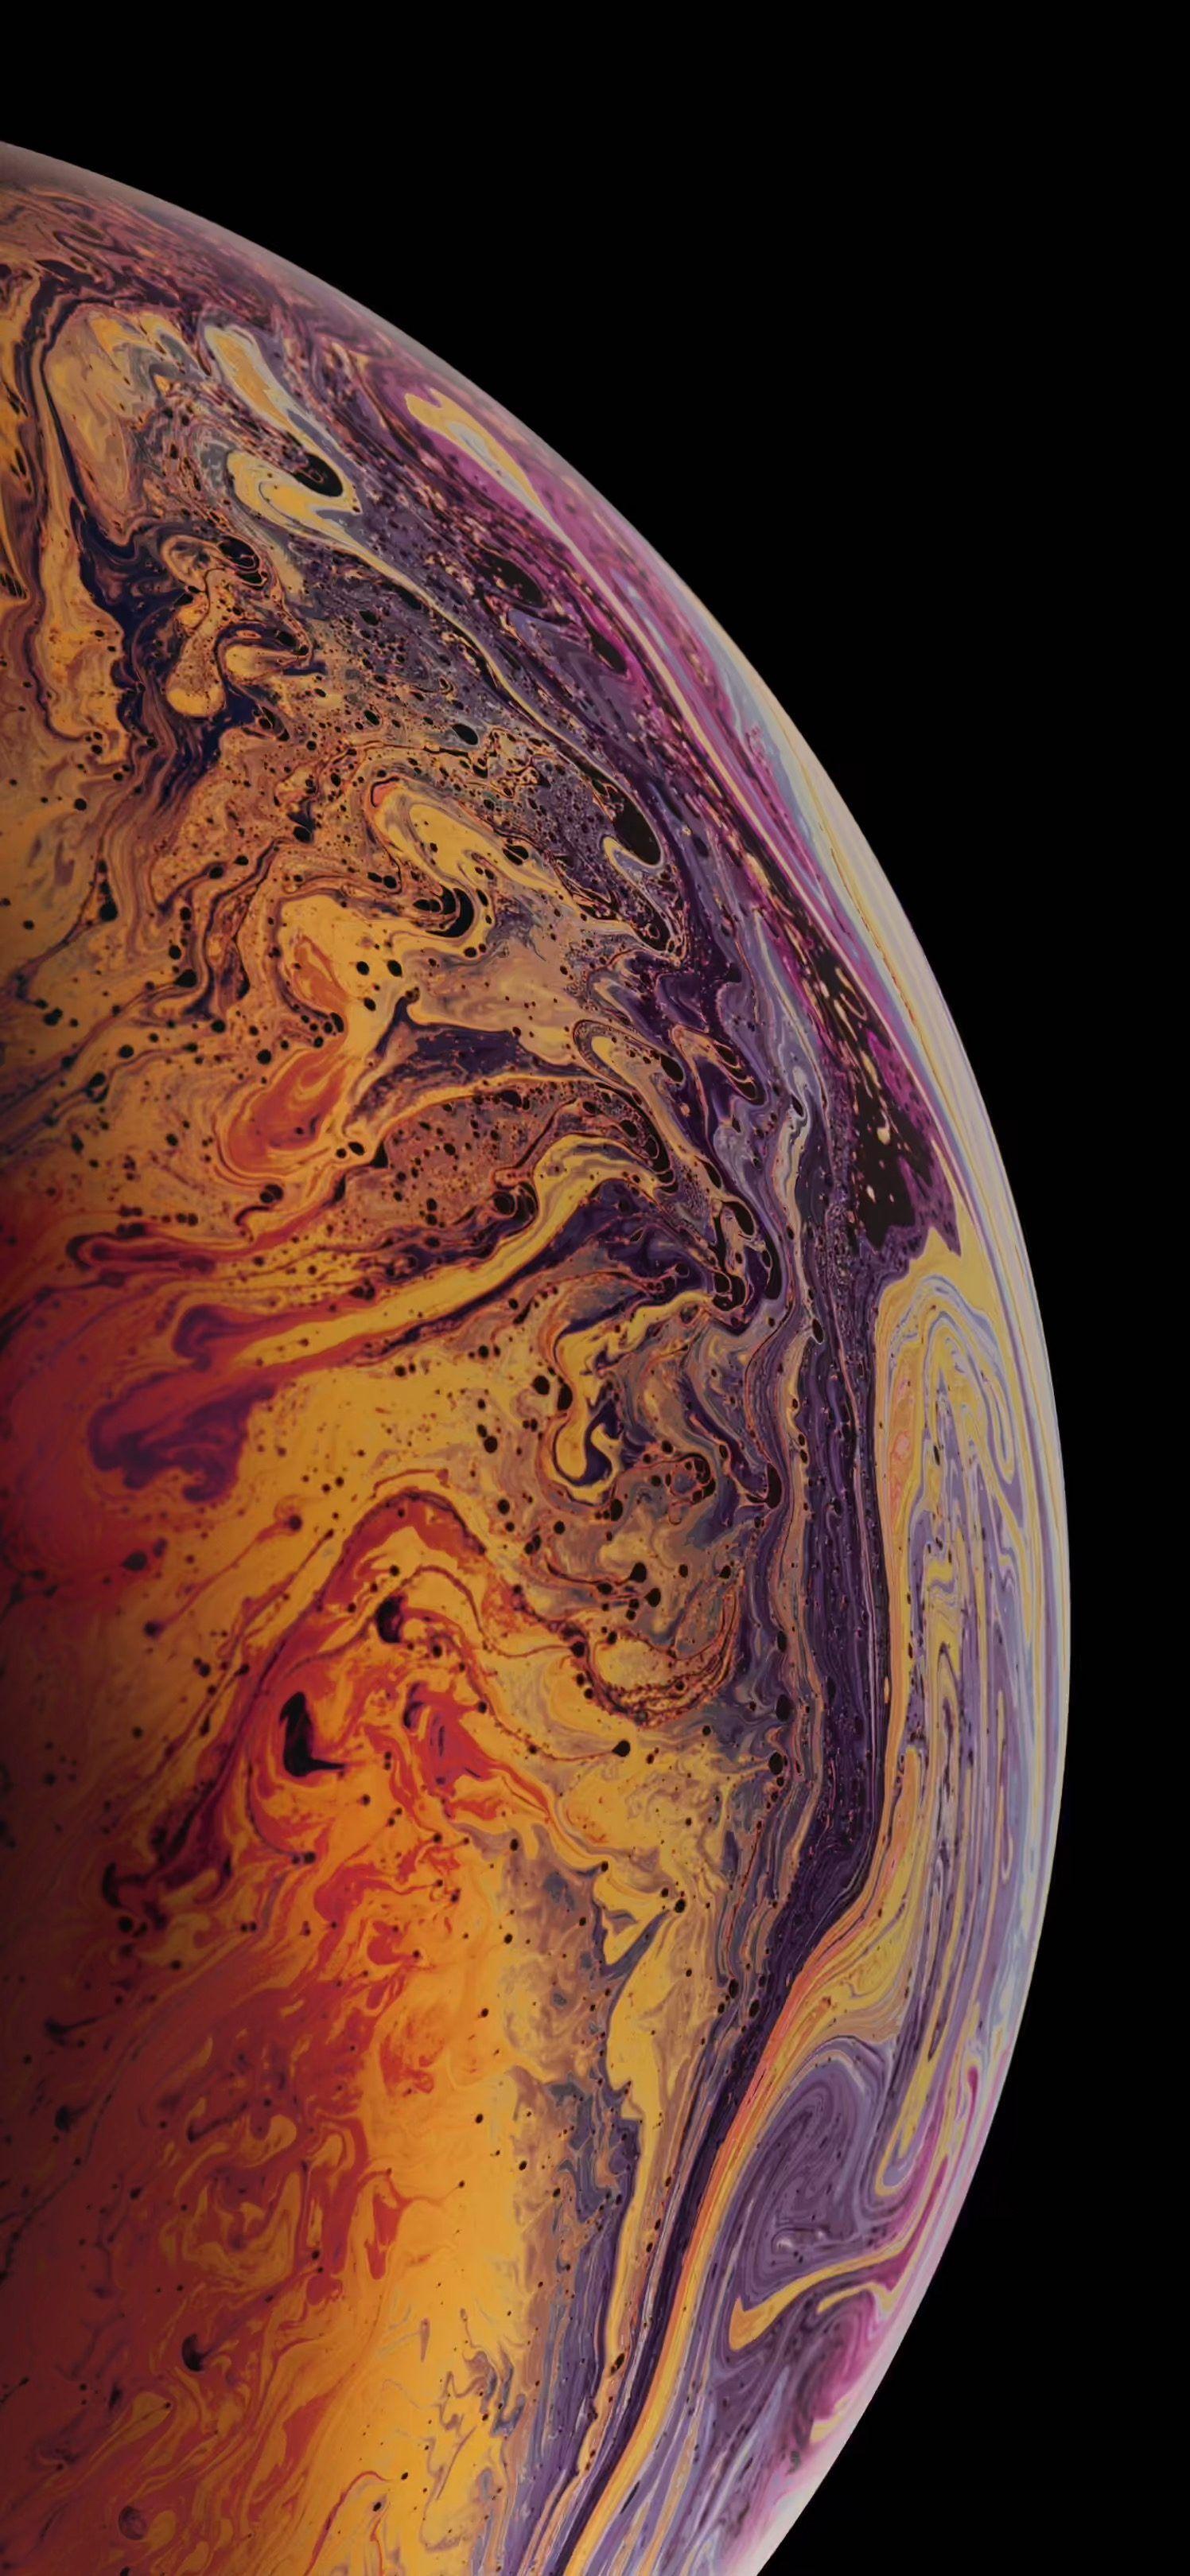 iPhone X Original Wallpapers - Top Những Hình Ảnh Đẹp